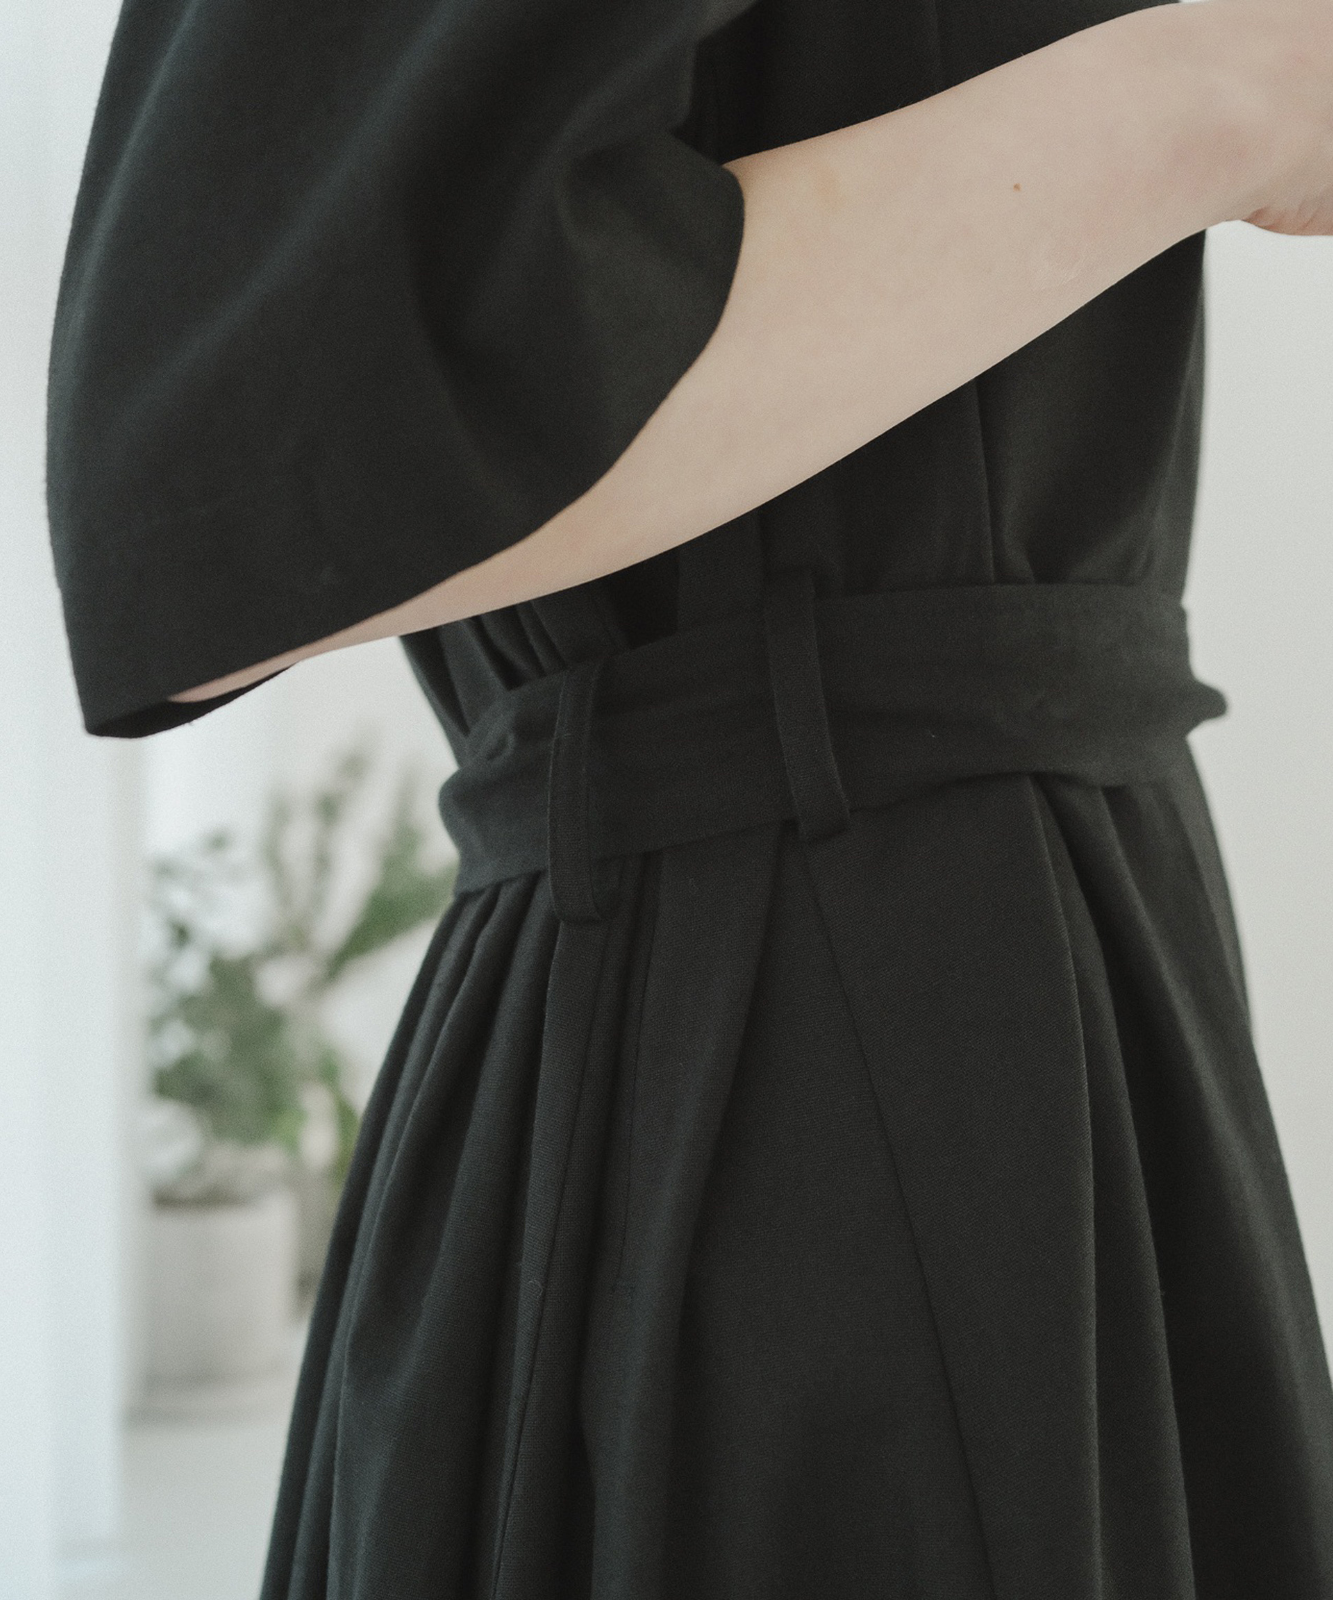 ≪在庫販売≫【THE DRESS #36】black linen dress（ブラックリネンドレス）